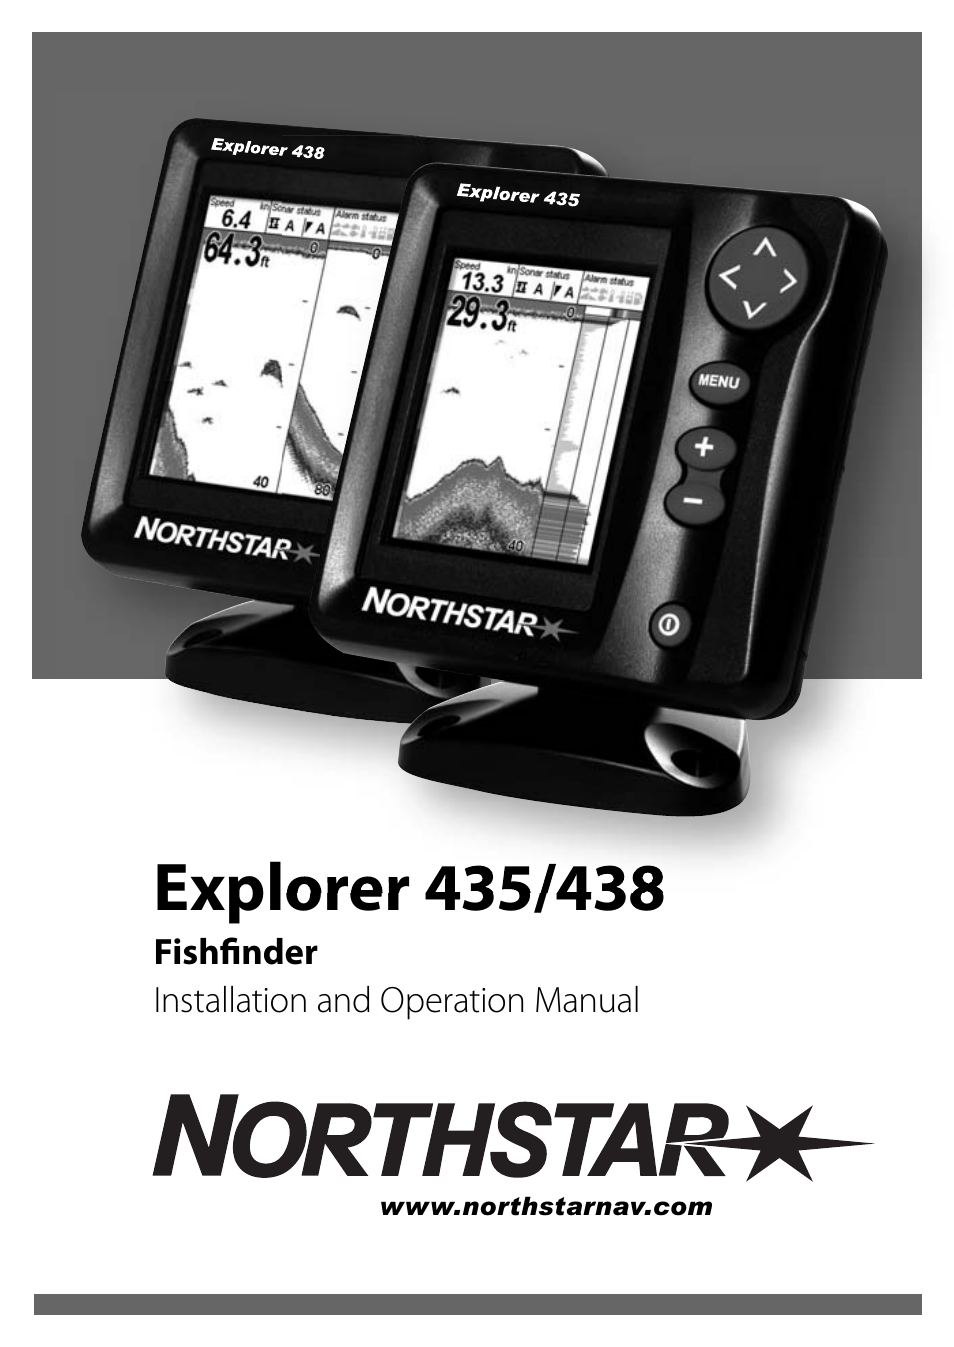 NorthStar Navigation EXPLORER 435 User Manual | 32 pages